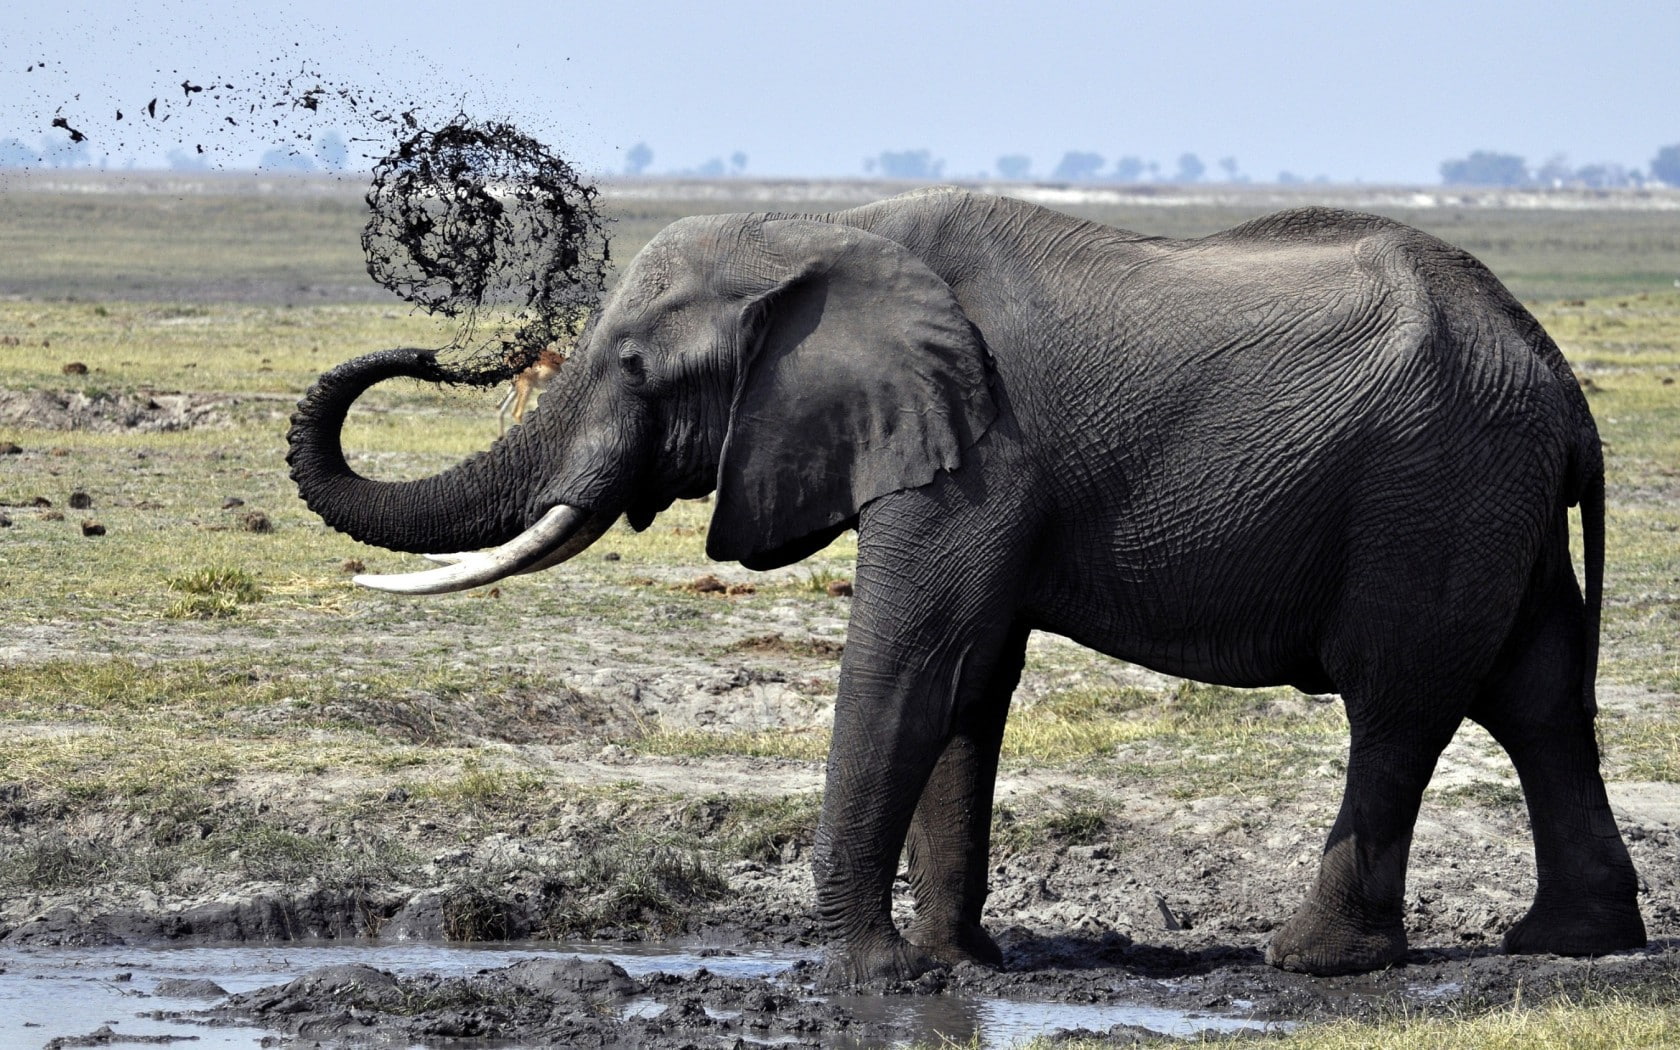 Elephant mud puddle, elephants, tusks, trunk, shower